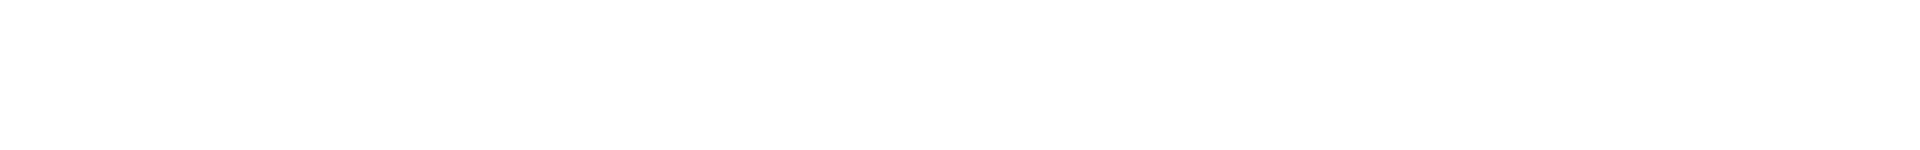 Надпись Казачий Спас, переливающаяся всеми цветами радуги с сайта С. В. Дёмина